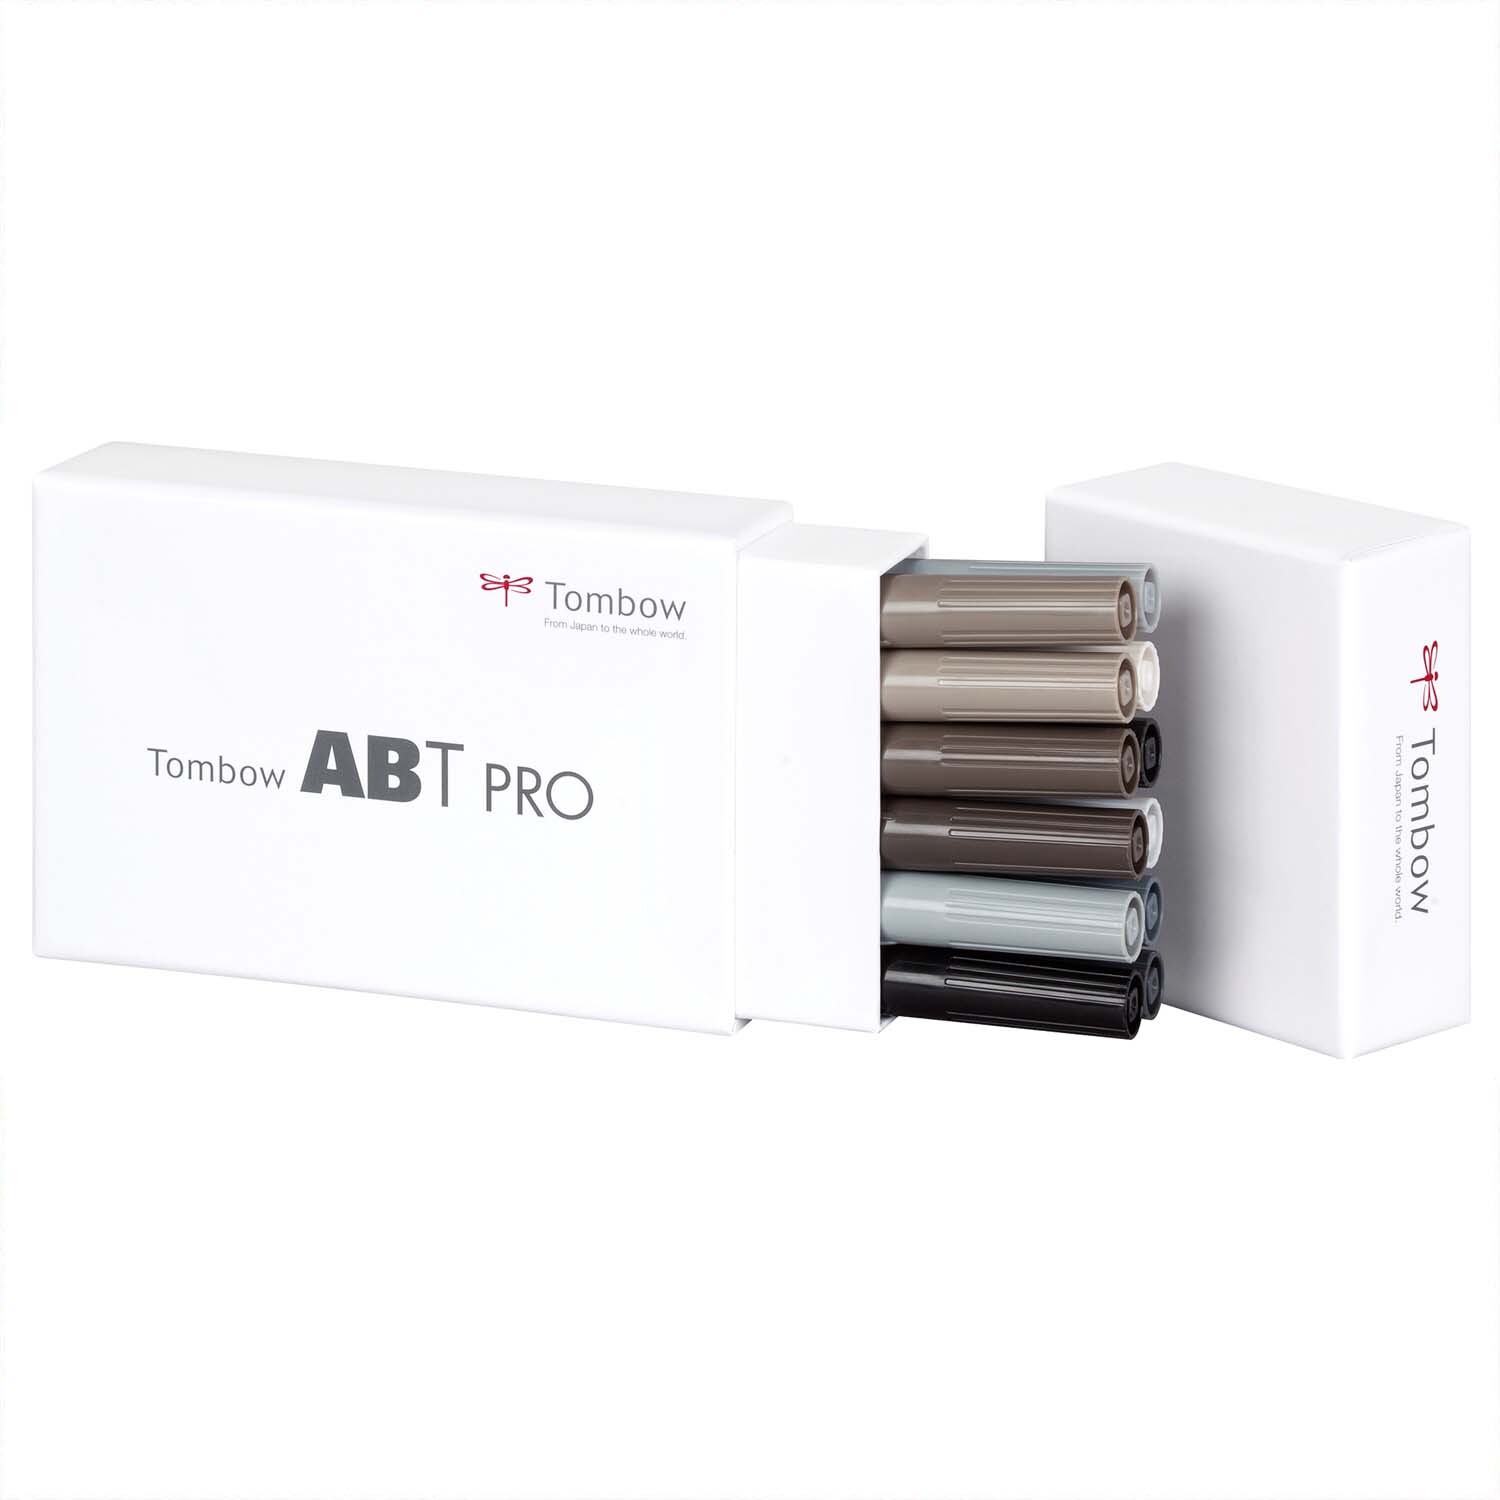 ABT PRO Grey Colours Alkoholbasierte Marker 12teilig